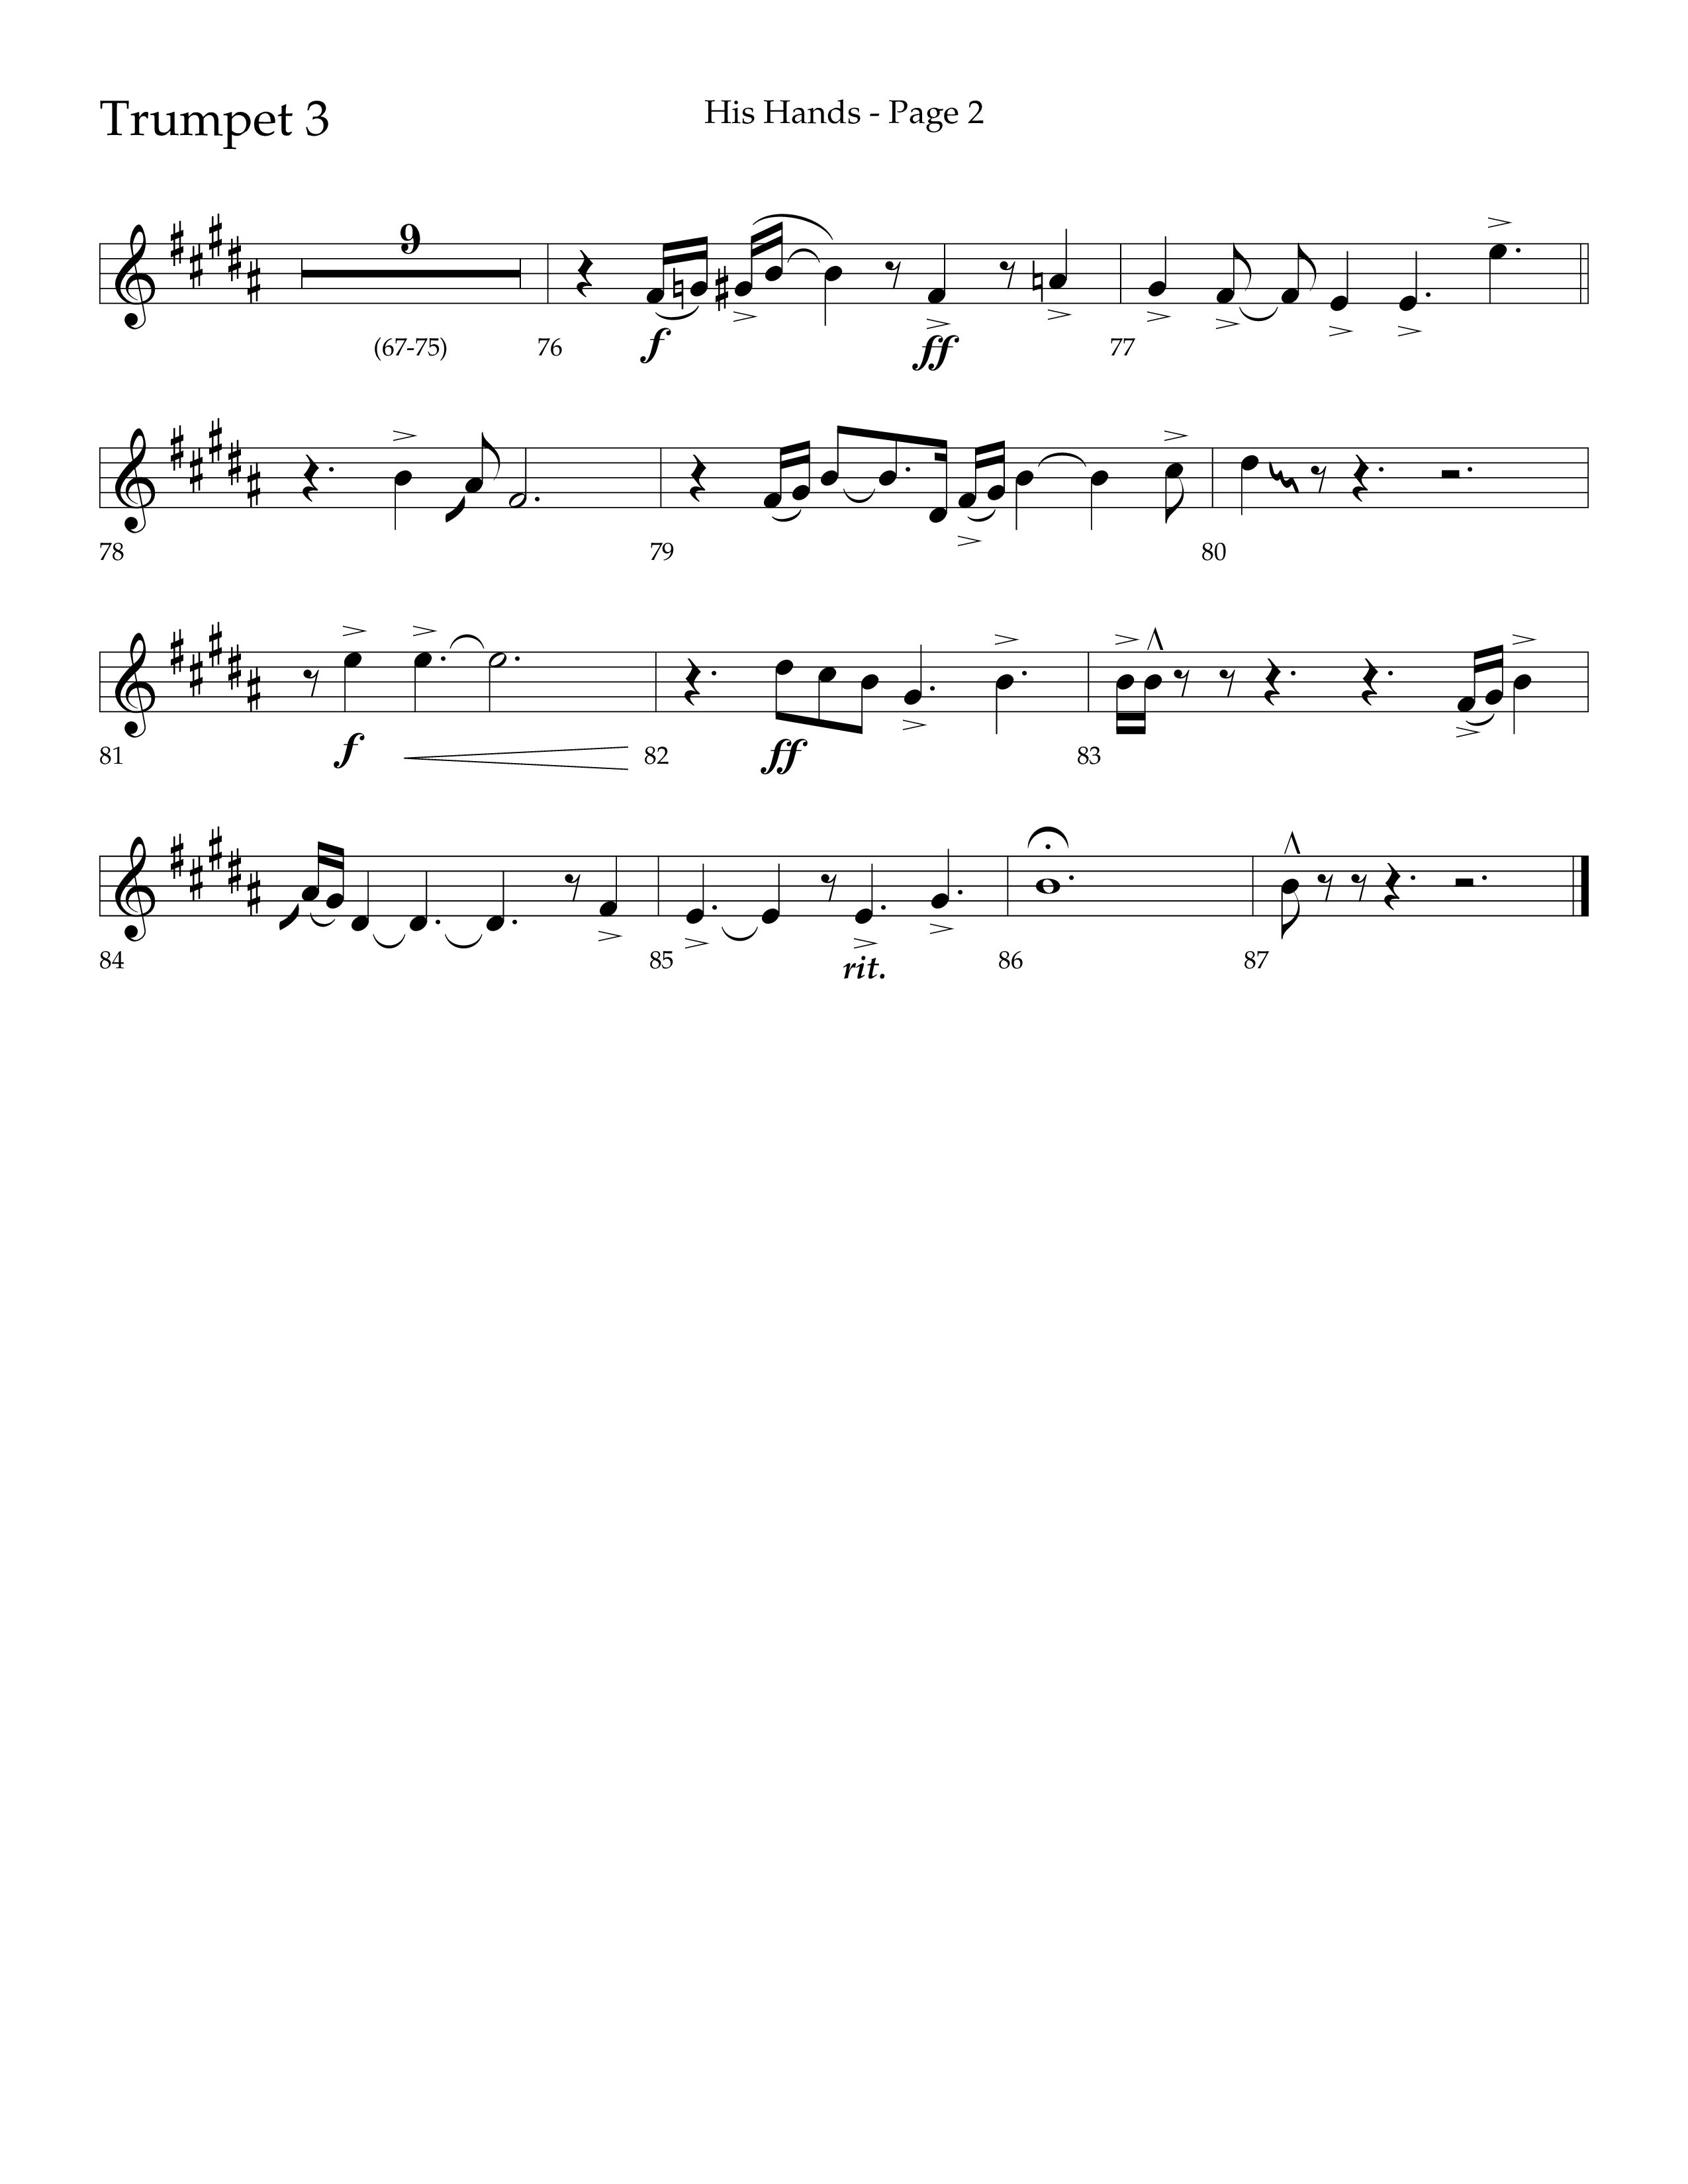 His Hands (Choral Anthem SATB) Trumpet 3 (Lifeway Choral / Arr. Cliff Duren)